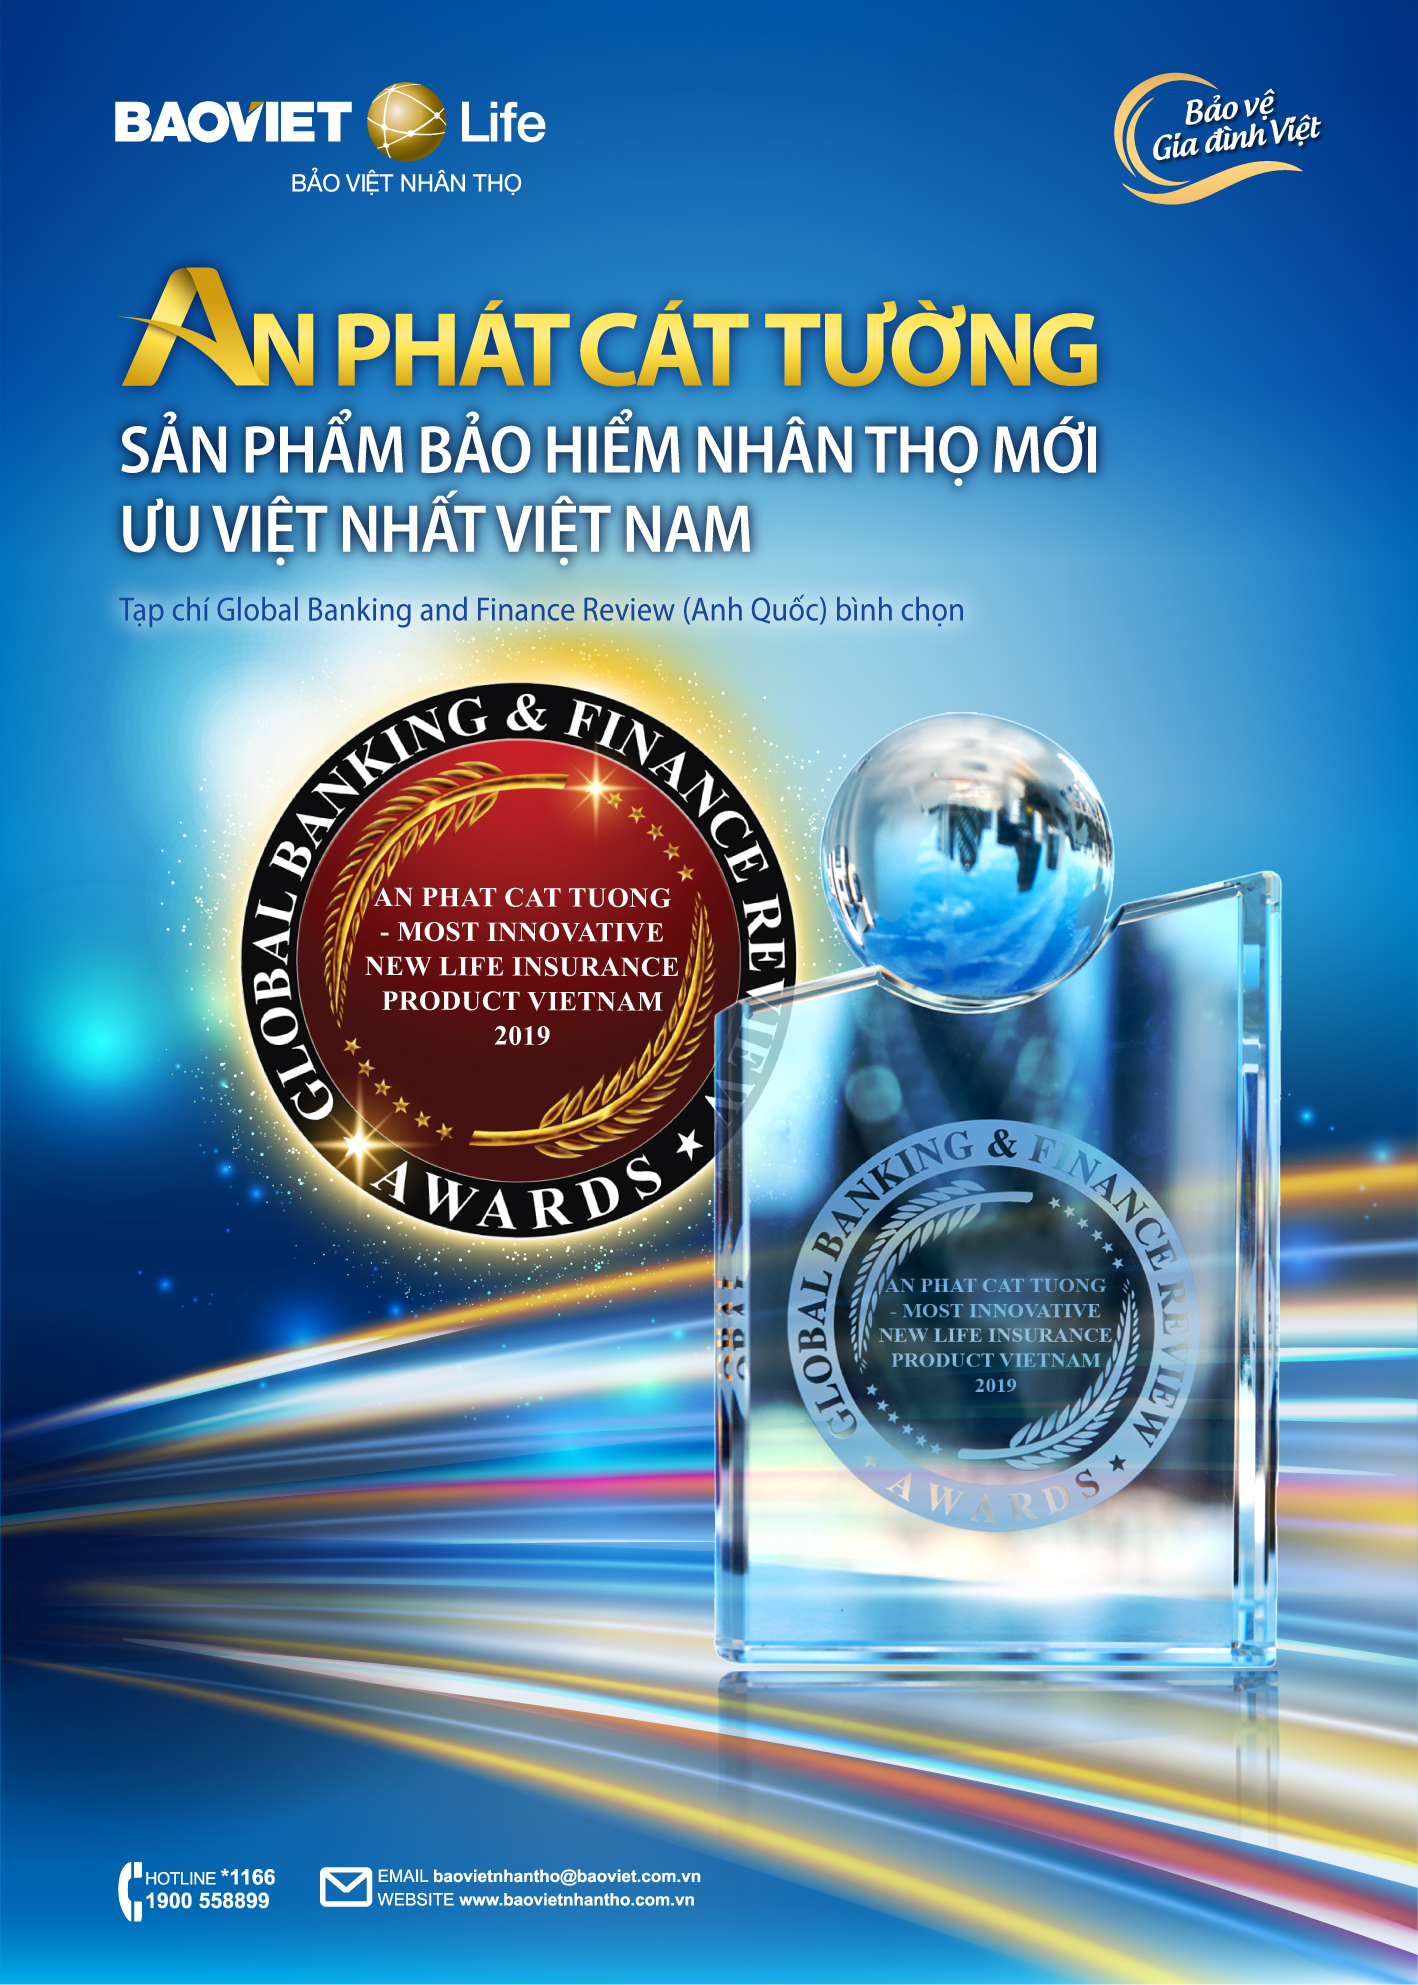 "An Phát Cát Tường" nhận giửi thưởng “Sản phẩm Bảo hiểm nhân thọ mới ưu việt nhất Việt Nam"